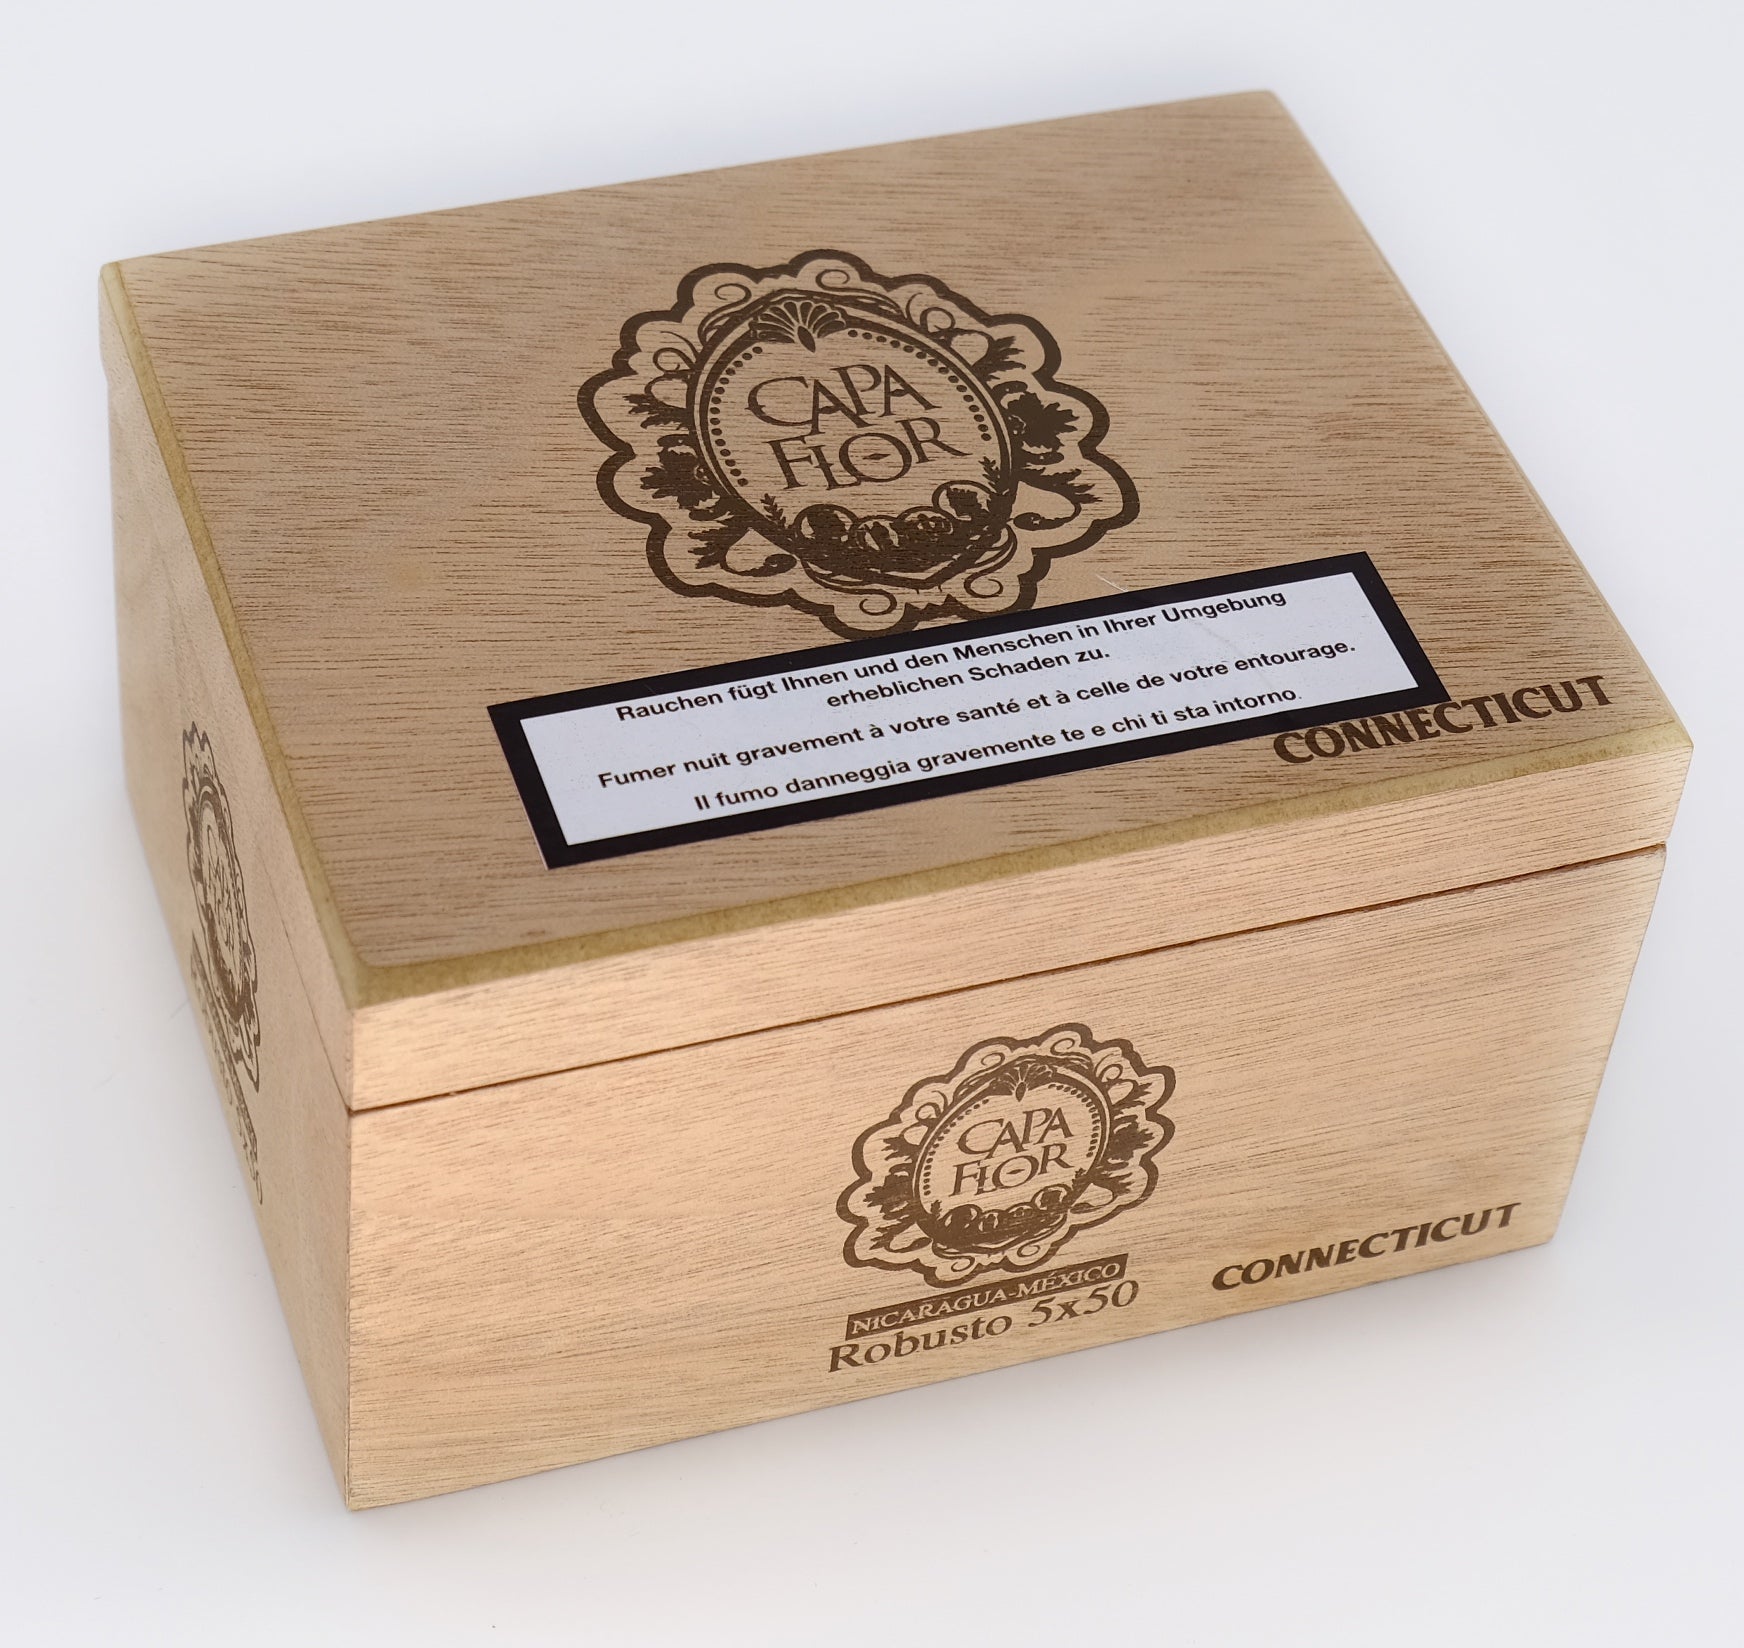 20er Kiste Capa Flor Connecticut Robusto Zigarren, Box verschlossen